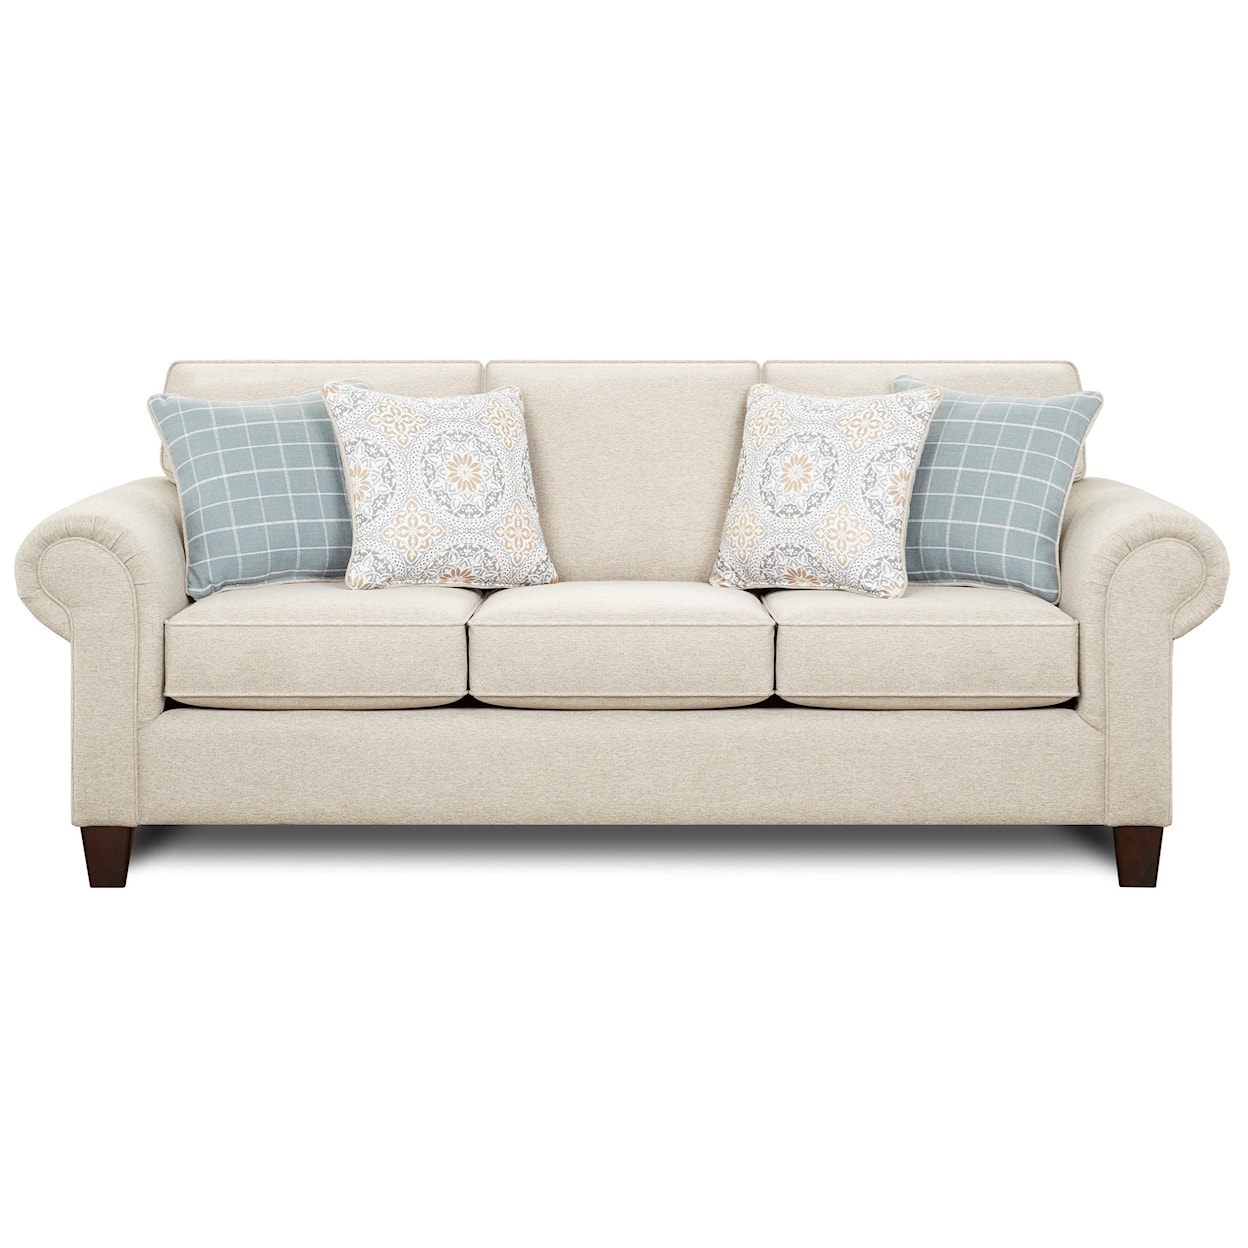 Fusion Furniture 3100 BATES NICKLE Sofa